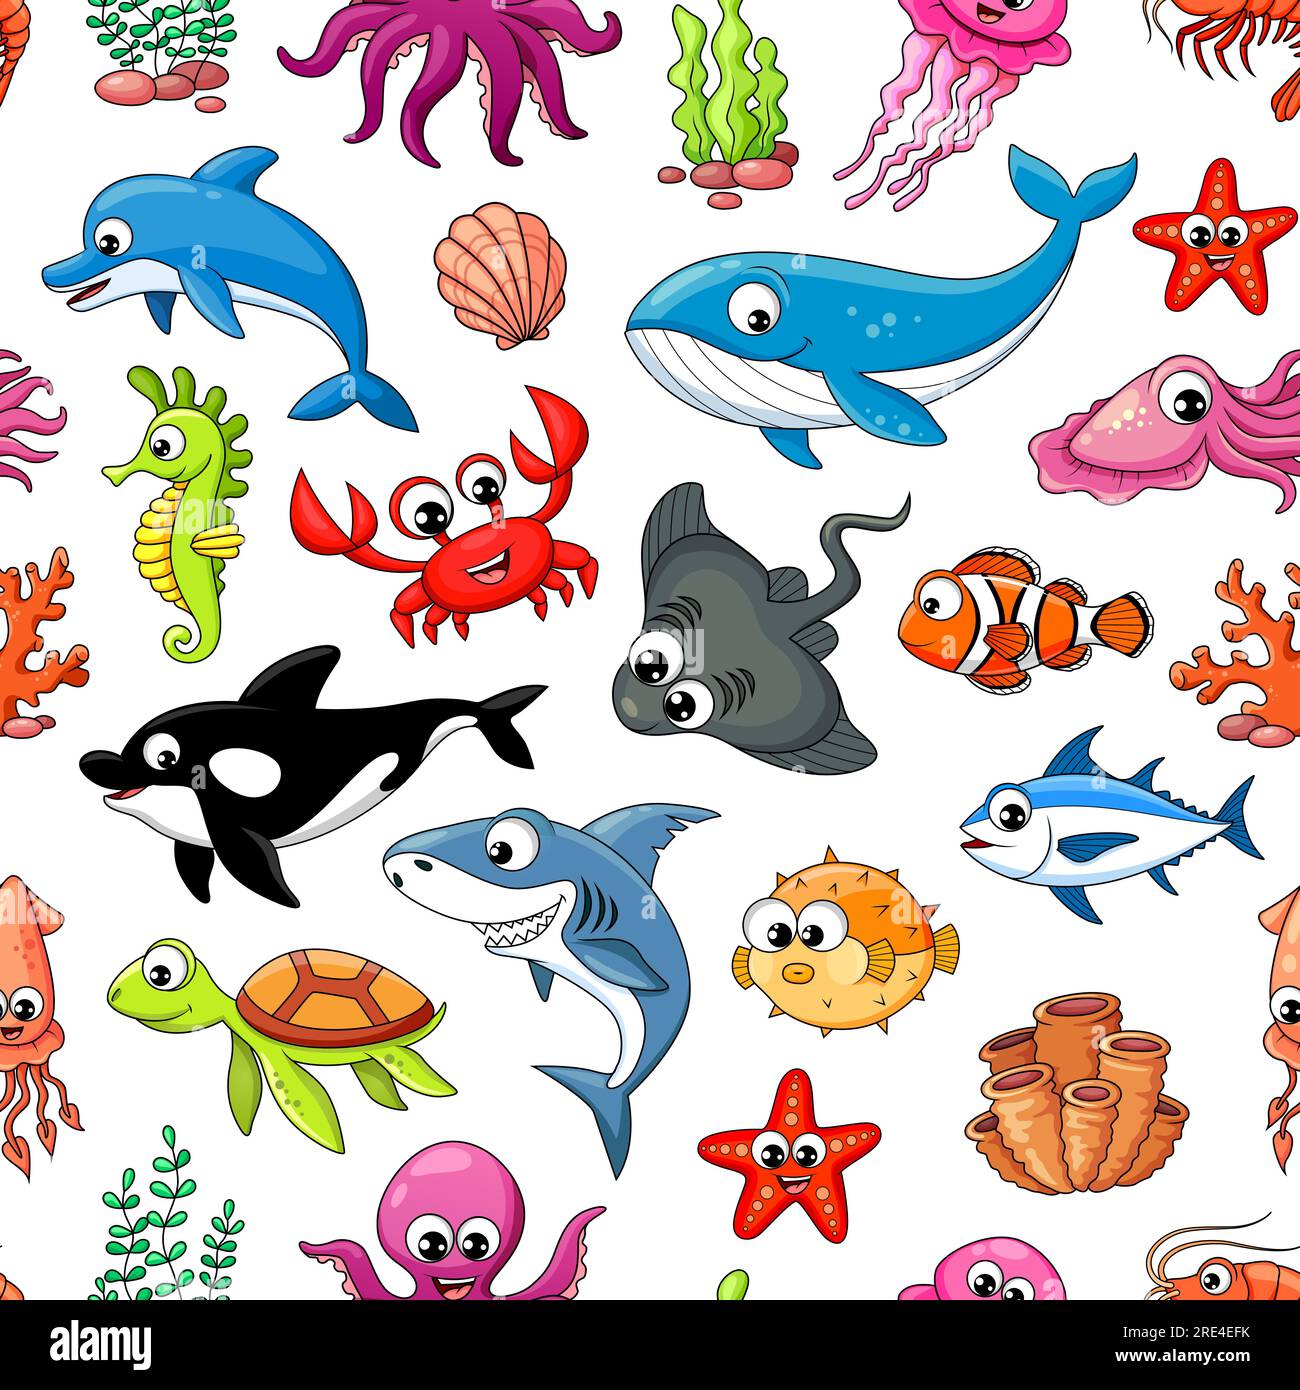 Baby Sharks and Mermaid Tiles doo doo doo